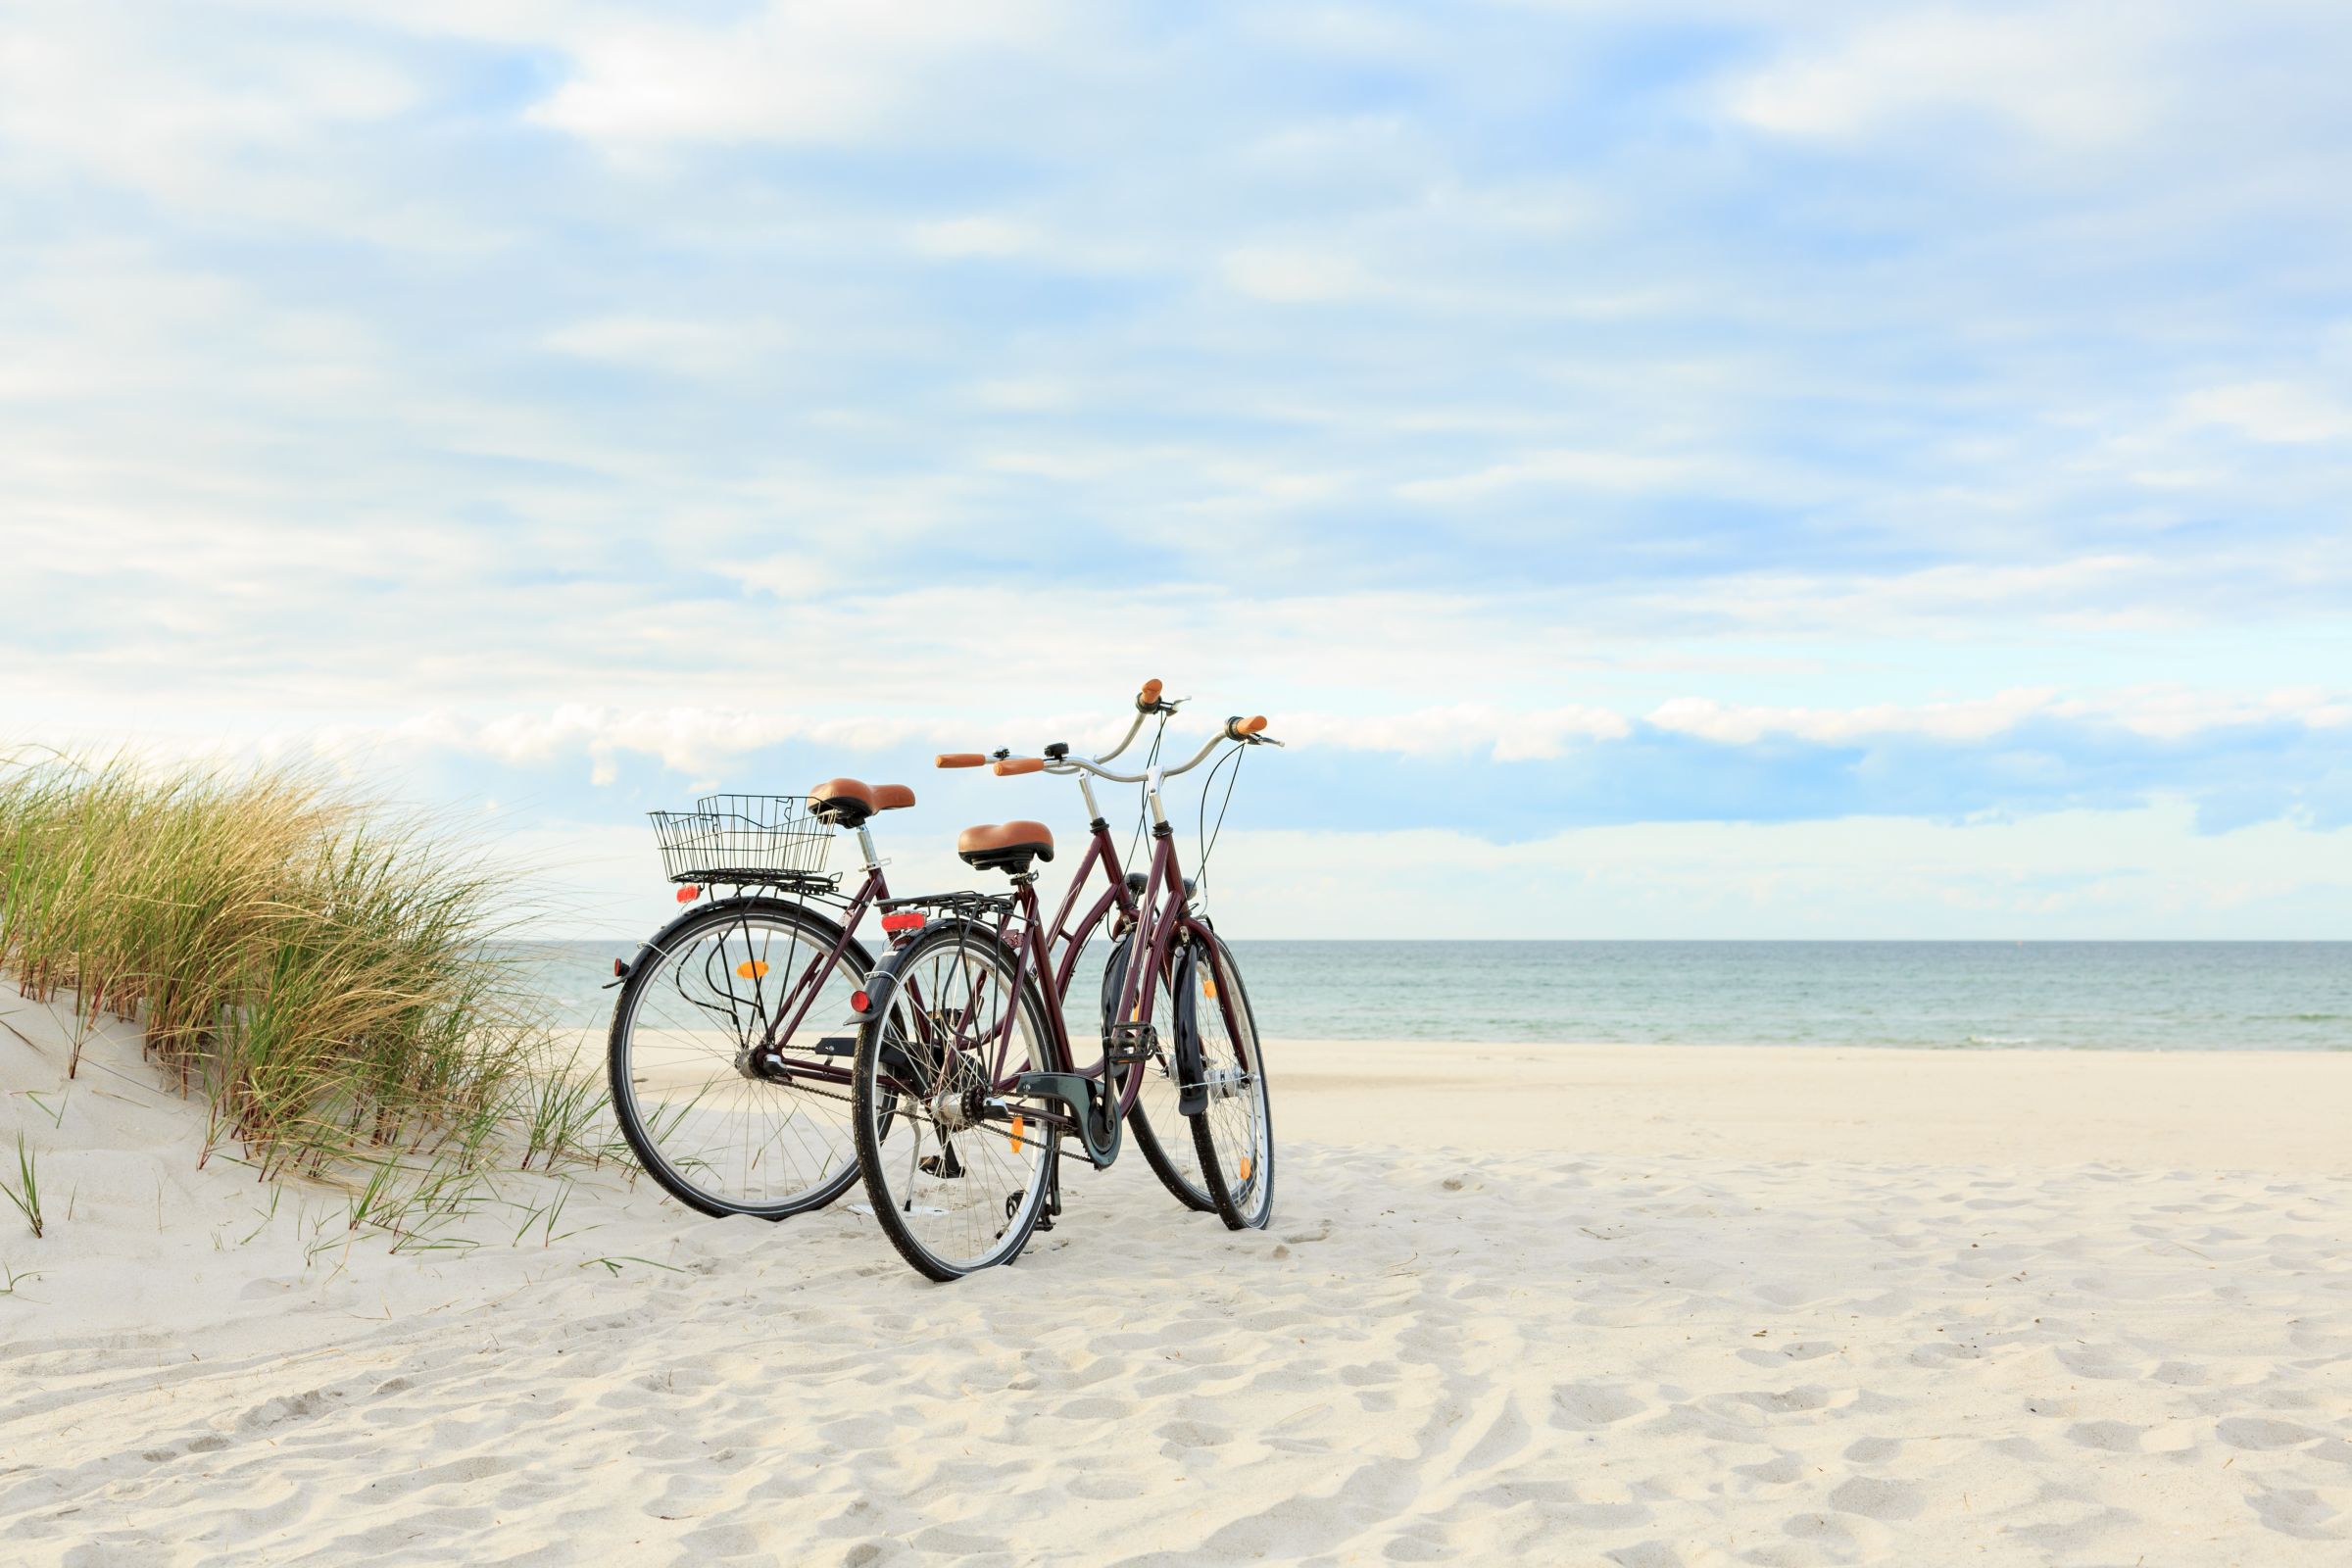 Bike on the beach